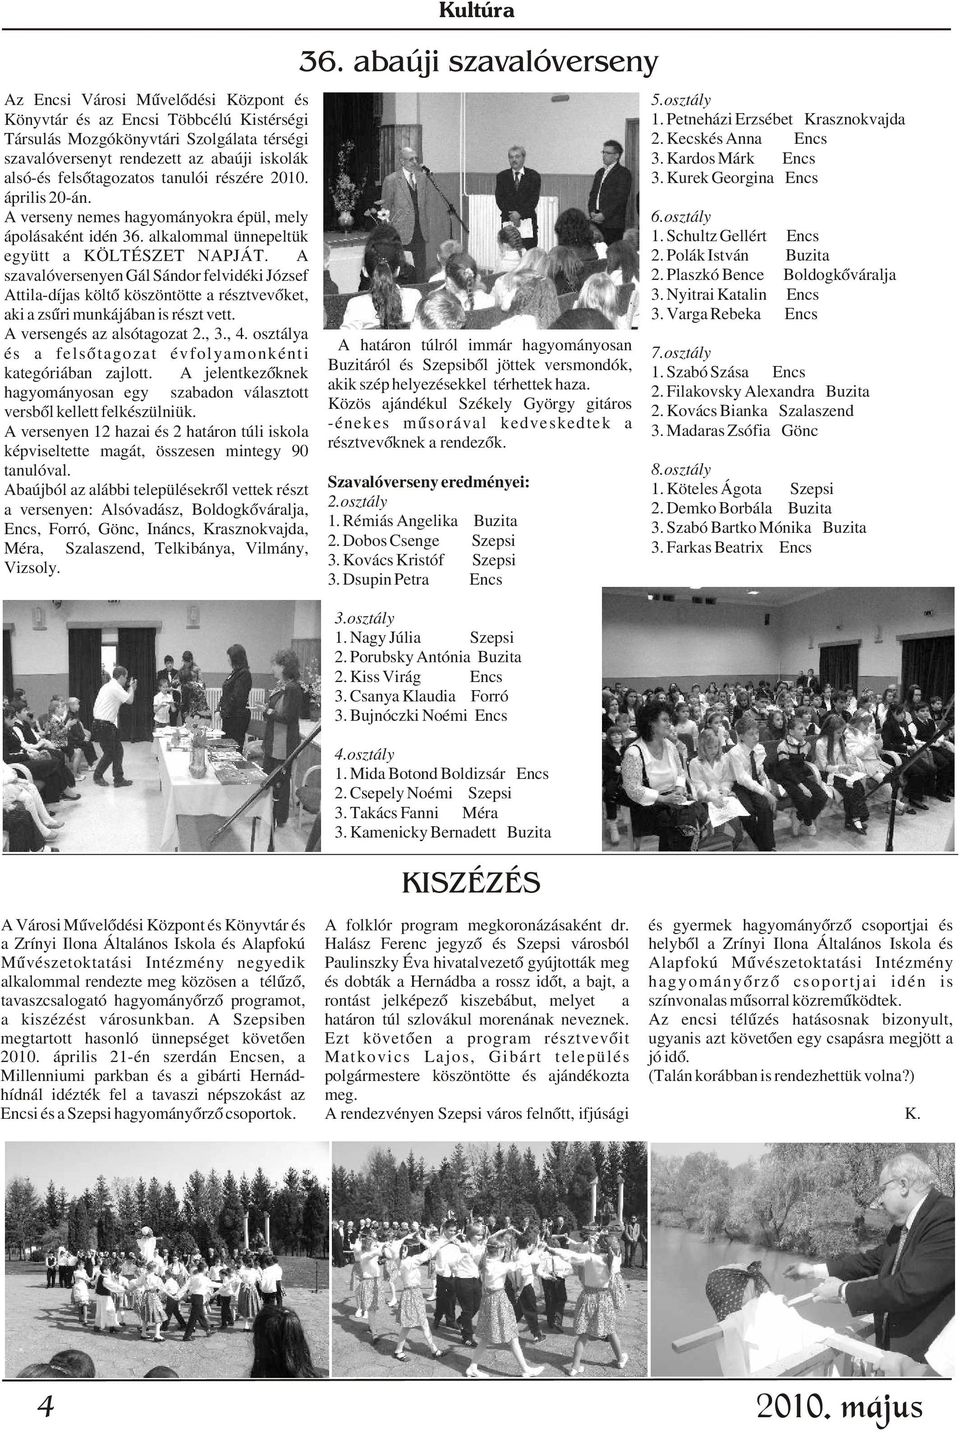 Kardos Márk Encs alsó-és felsõtagozatos tanulói részére 2010. 3. Kurek Georgina Encs április 20-án. A verseny nemes hagyományokra épül, mely 6.osztály ápolásaként idén 36. alkalommal ünnepeltük 1.